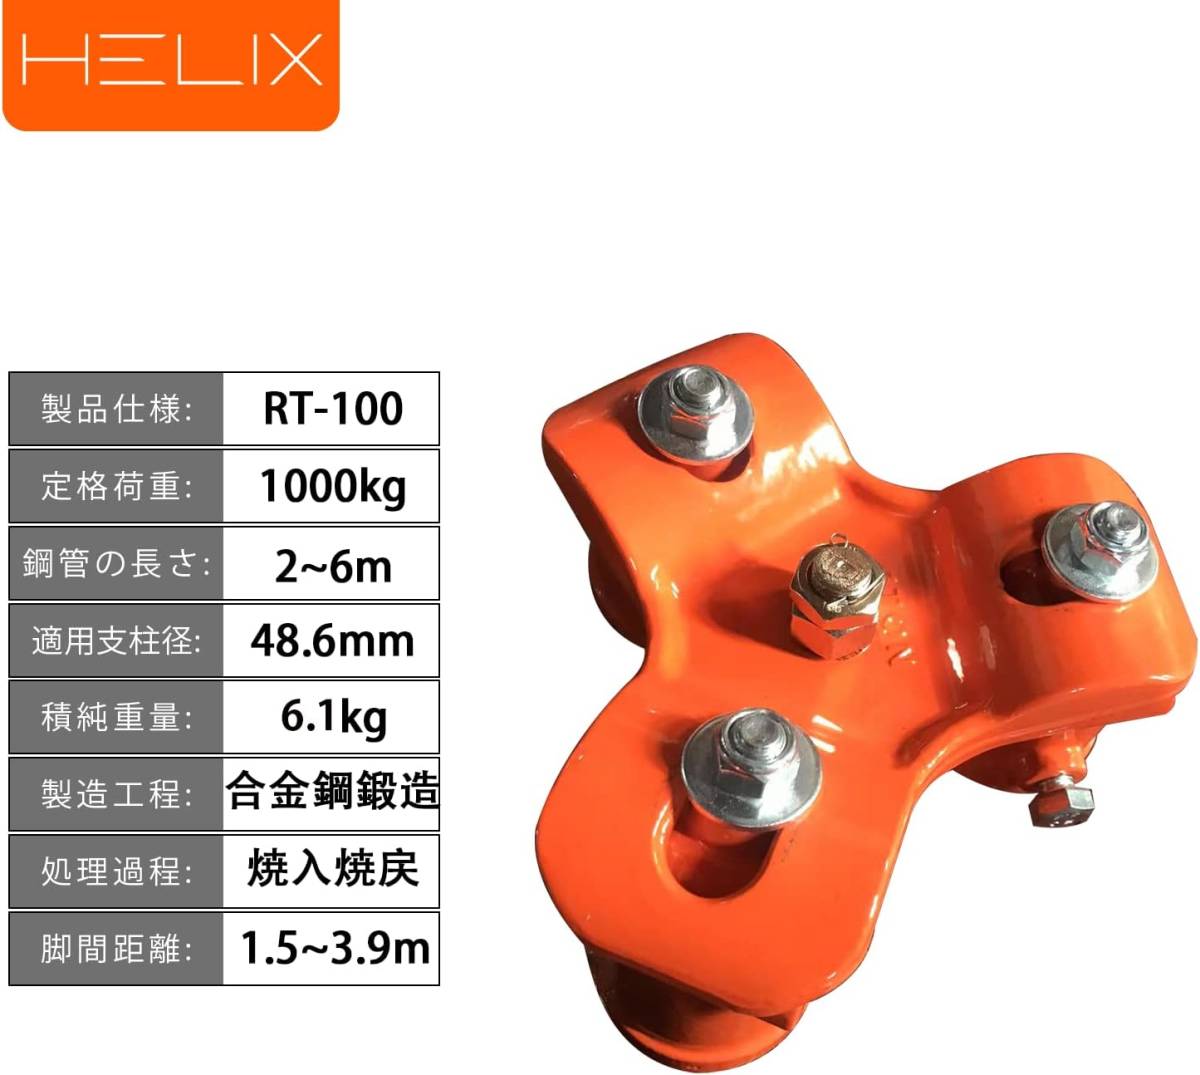 HELIX 三脚ヘッド 1t チェーンブロック用 3脚ヘッド ブロックハンガー 1000kg HRT-100_画像2